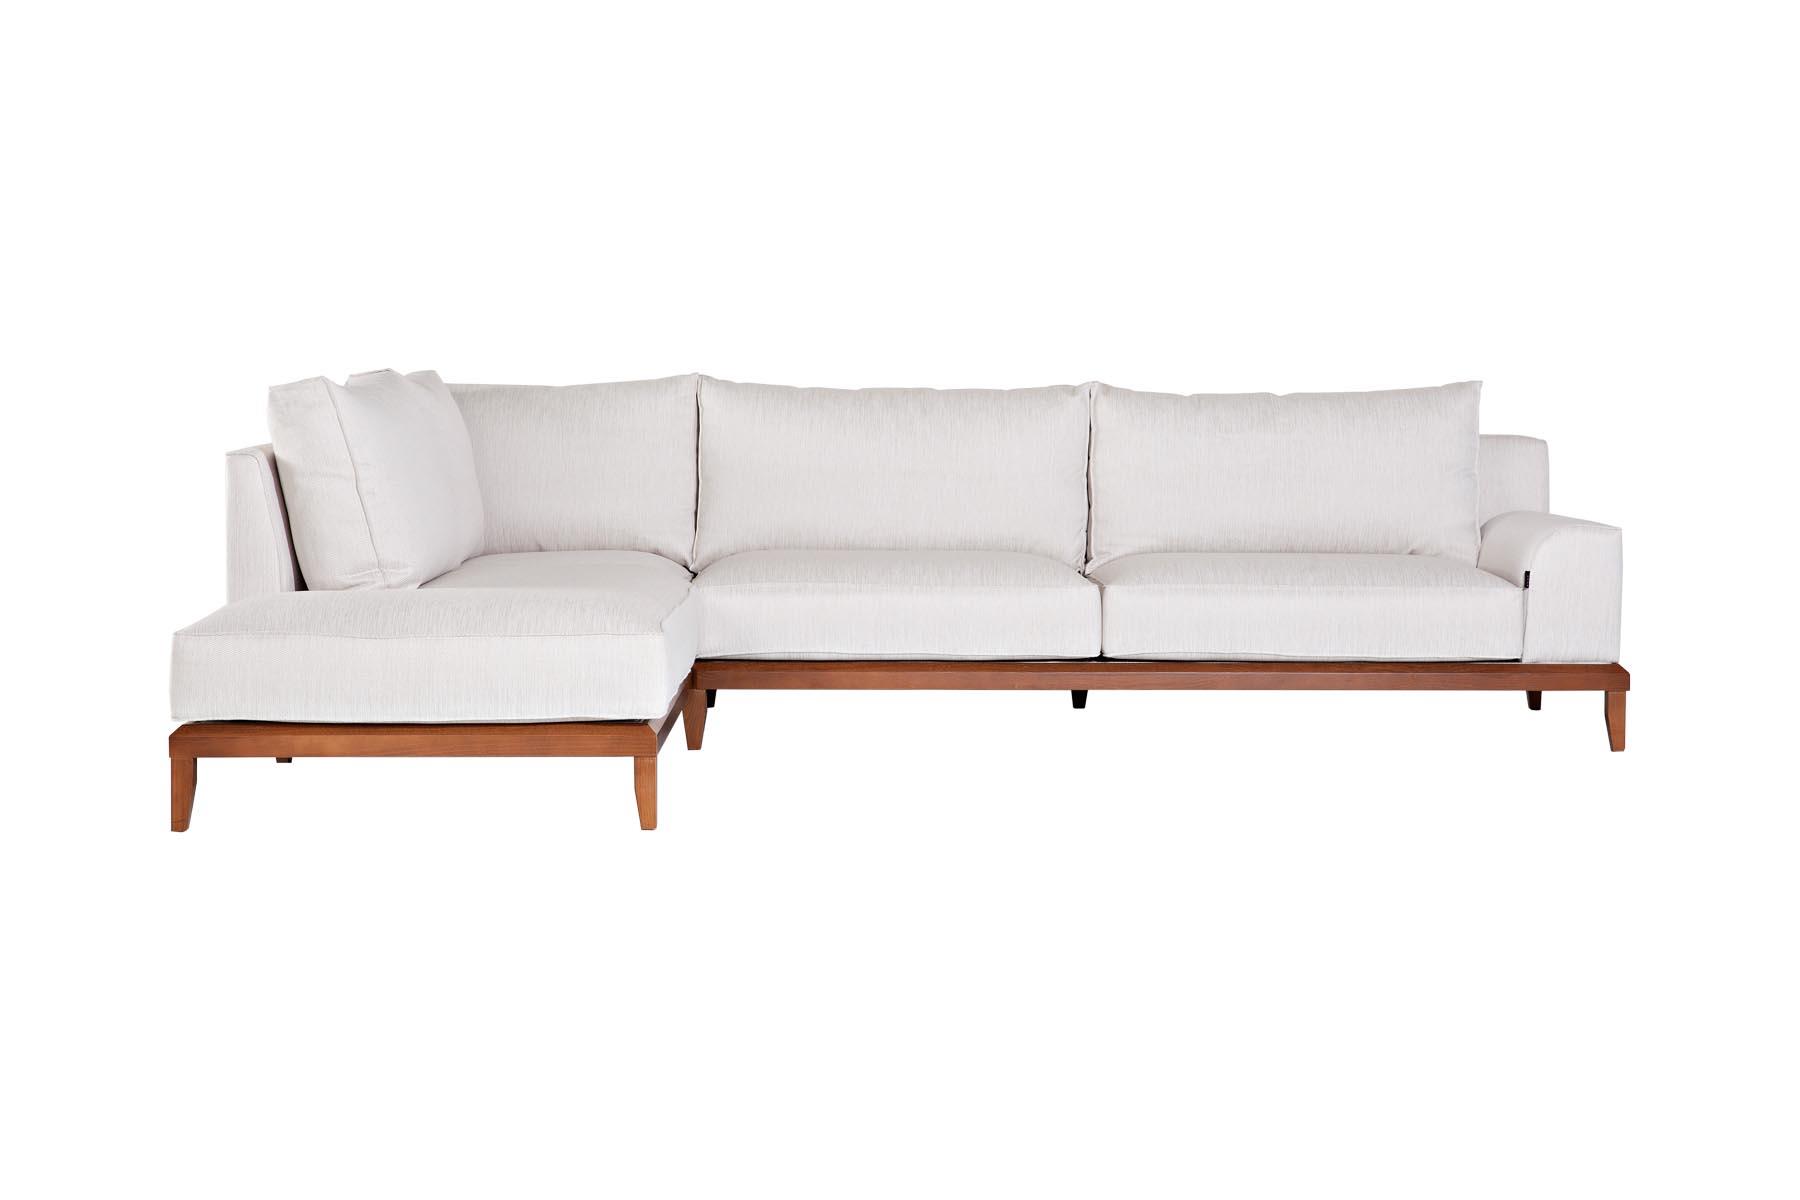 Luksuzna ugaona sofa. Njena specifična konstrukcija i udobnost upotpunjuju svaki prostor i čine ga ekskluzivnijim.